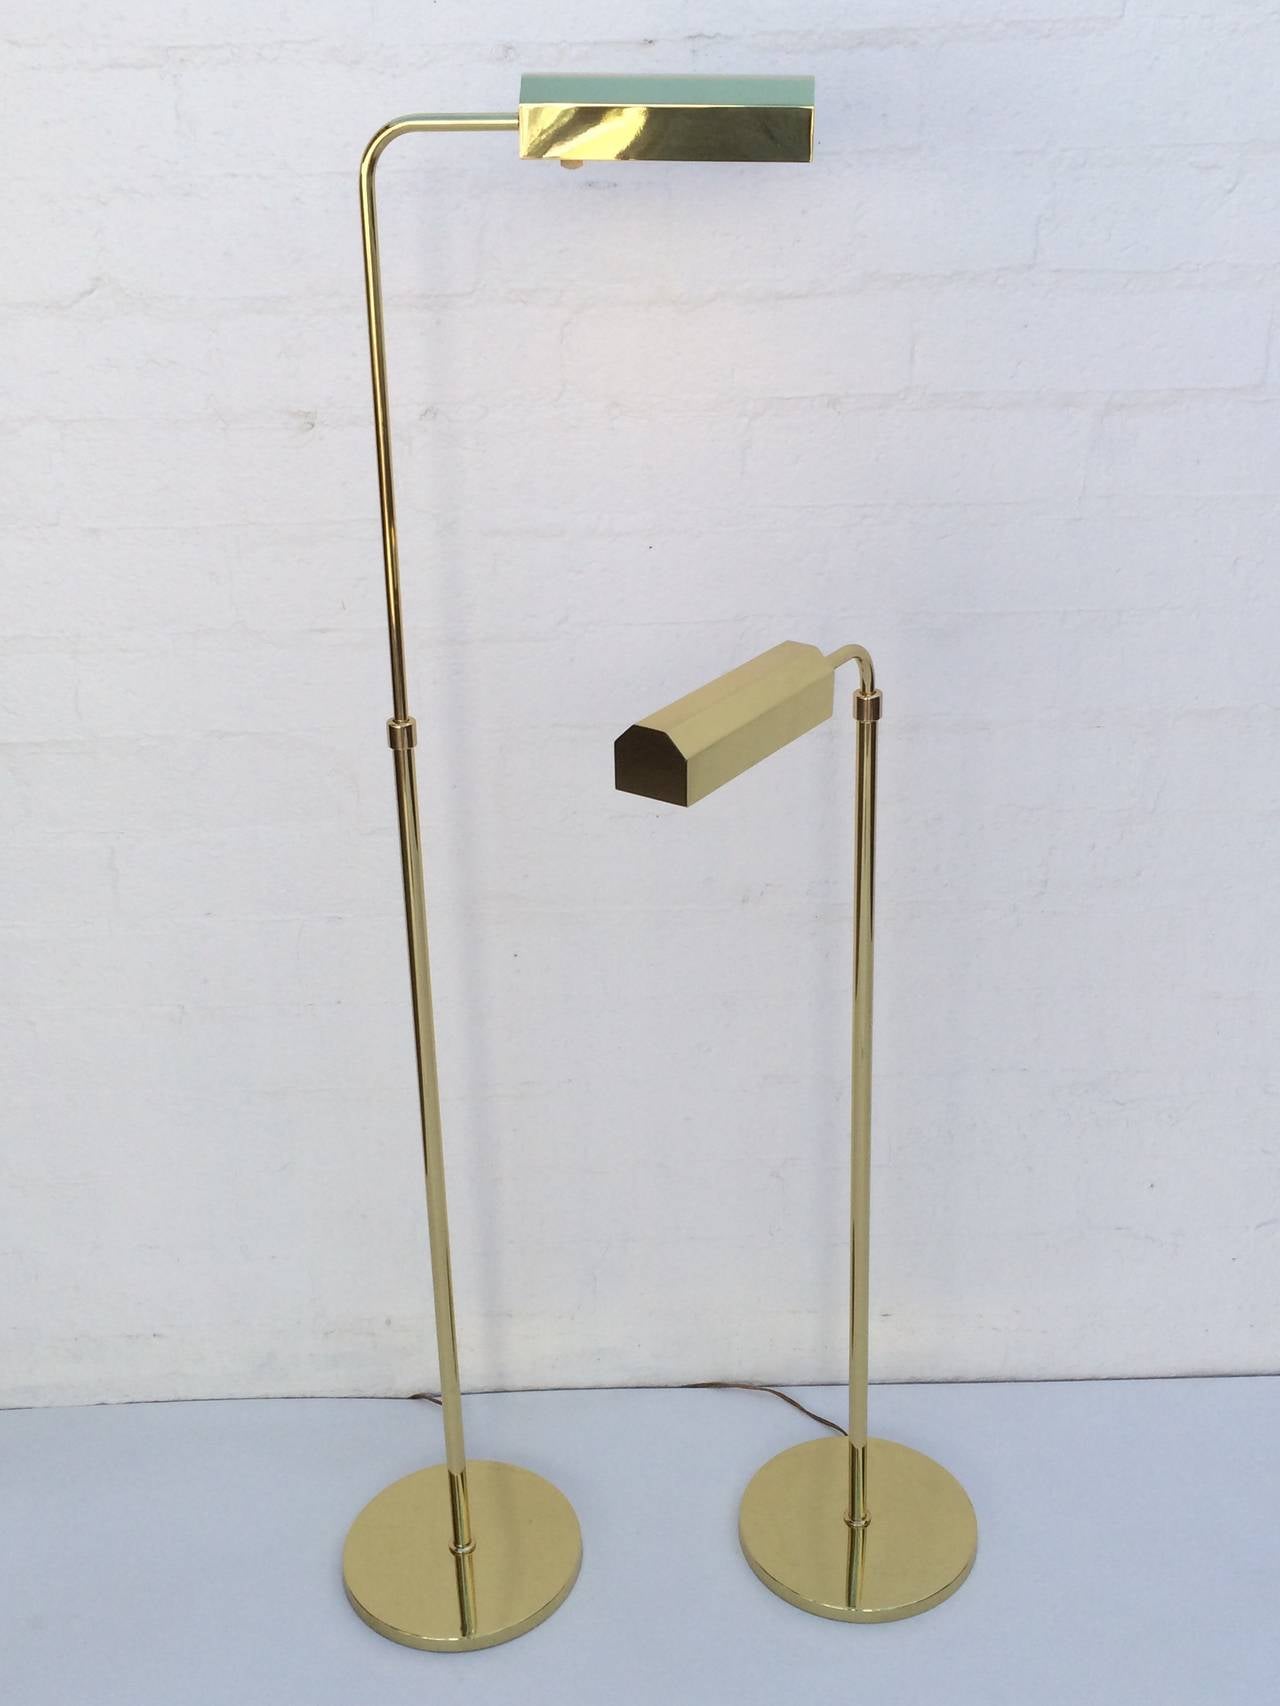 Ein Paar verstellbare Stehlampen aus den 1970er Jahren.
Neu professionell poliertes Messing.
Neu verkabelt.
Diese Lampen sind mit Dimmern ausgestattet. 

Maße: 57